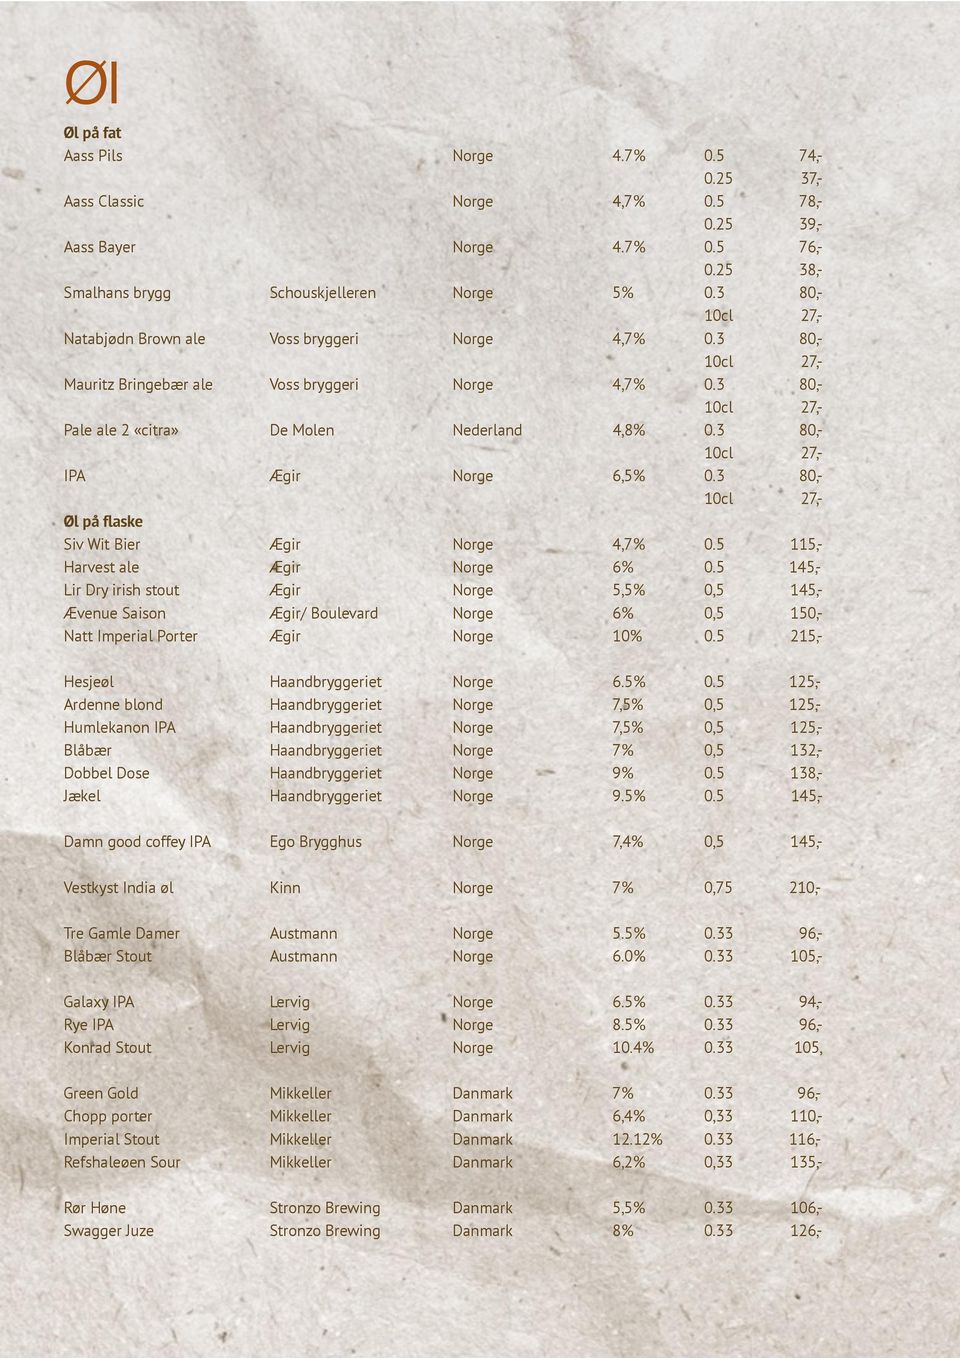 3 80,- Øl på flaske Siv Wit Bier Ægir Norge 4,7% 0.5 115,- Harvest ale Ægir Norge 6% 0.